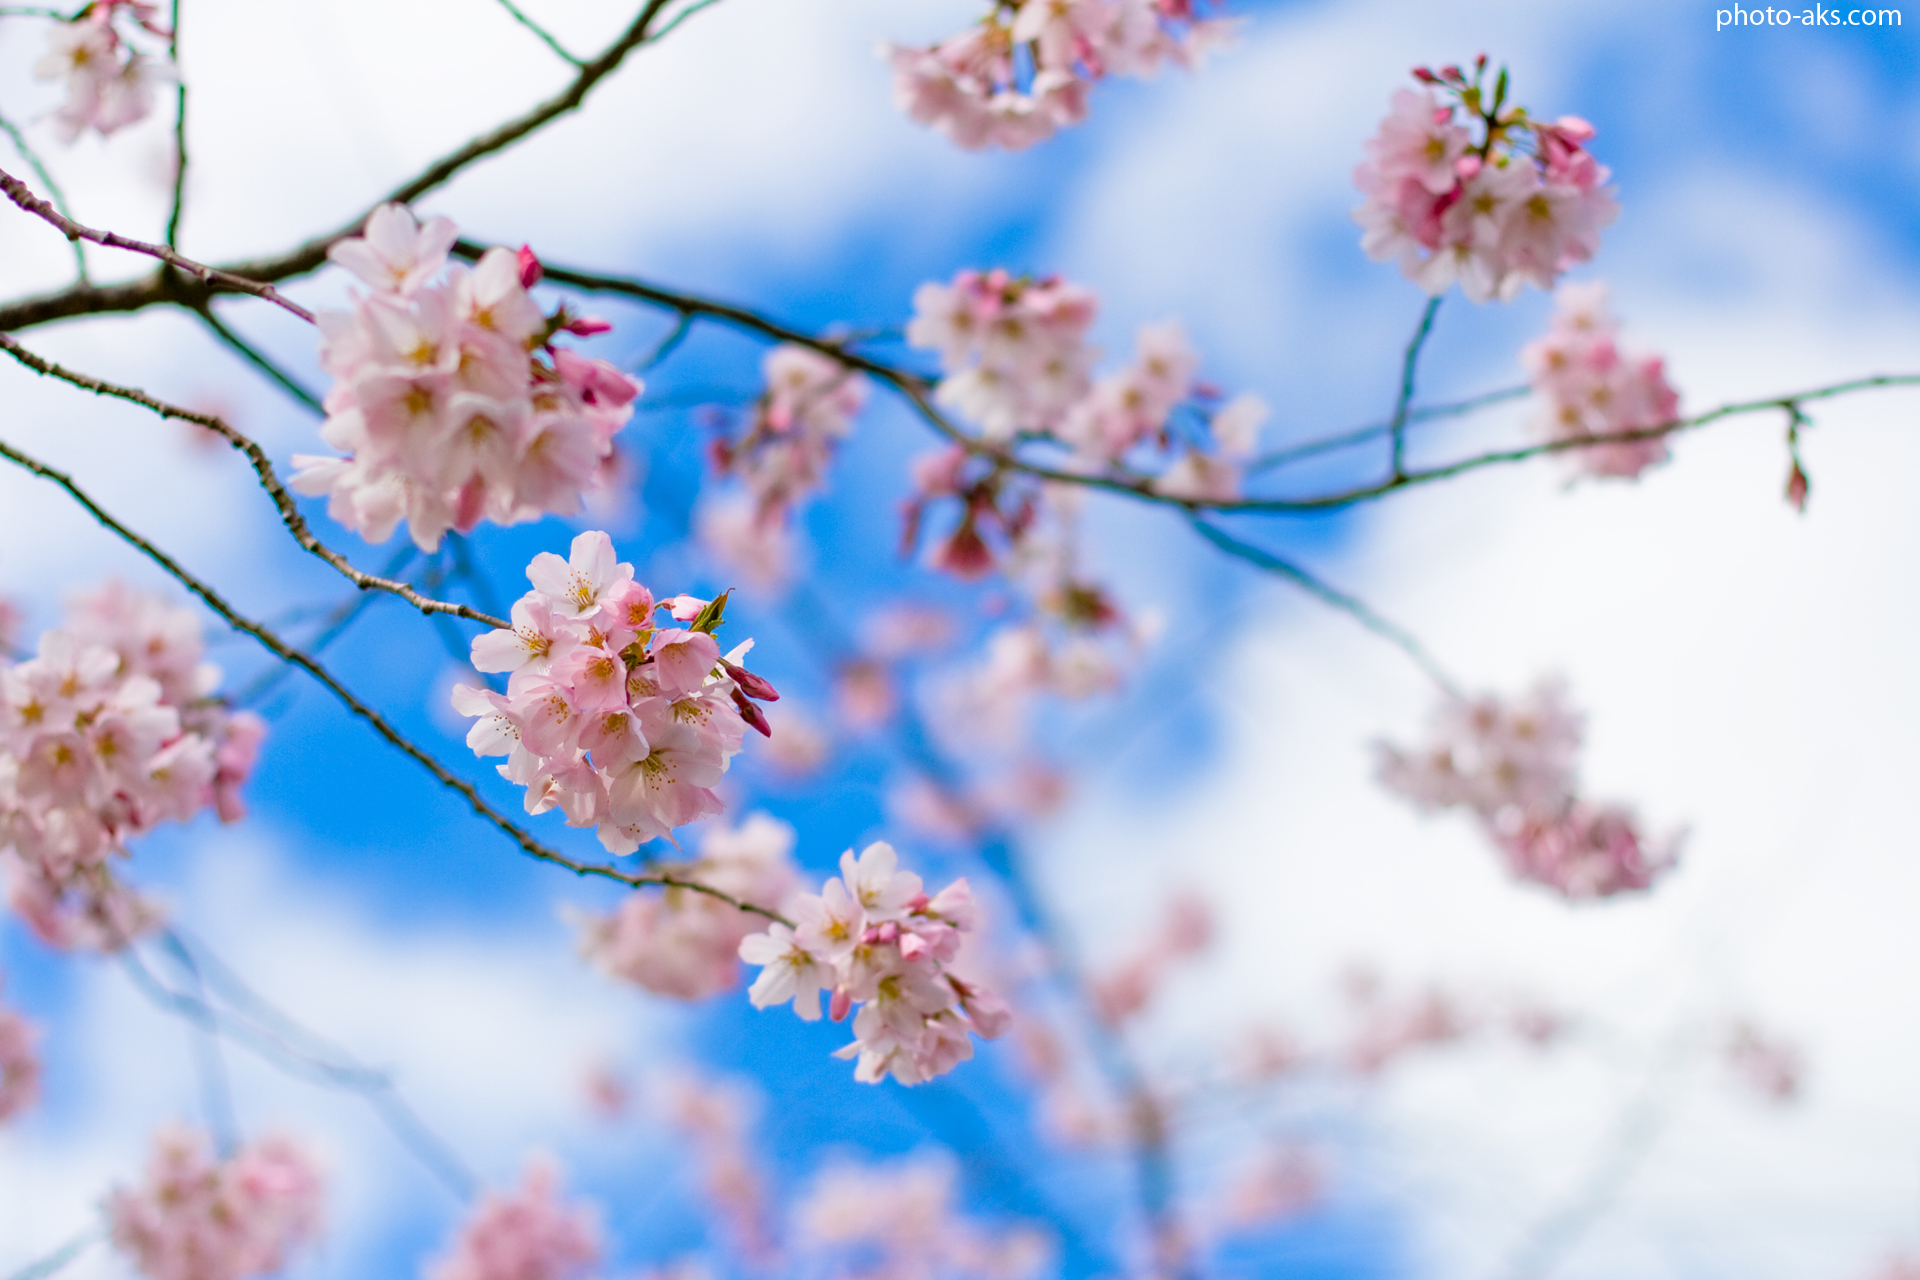 زیباترین عکس ها از فصل بهار